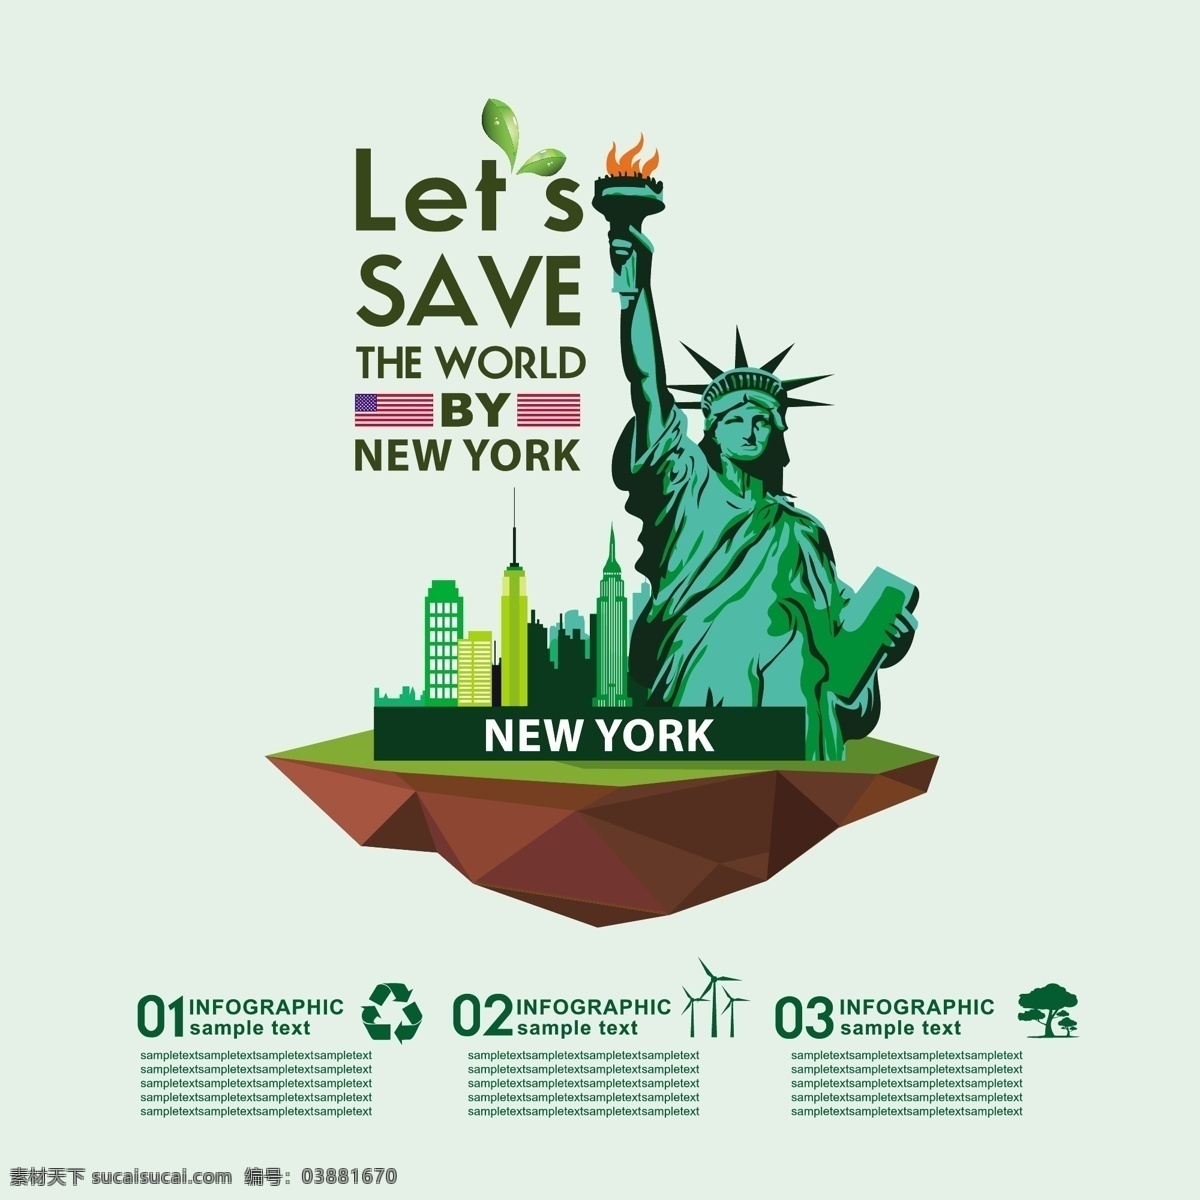 生态信息图表 环保 创意设计 eco 绿色 美国 纽约 循环 能源 节能 低碳 生态 回收 环保标志 ppt素材 底纹背景 商务金融 商业插画 白色